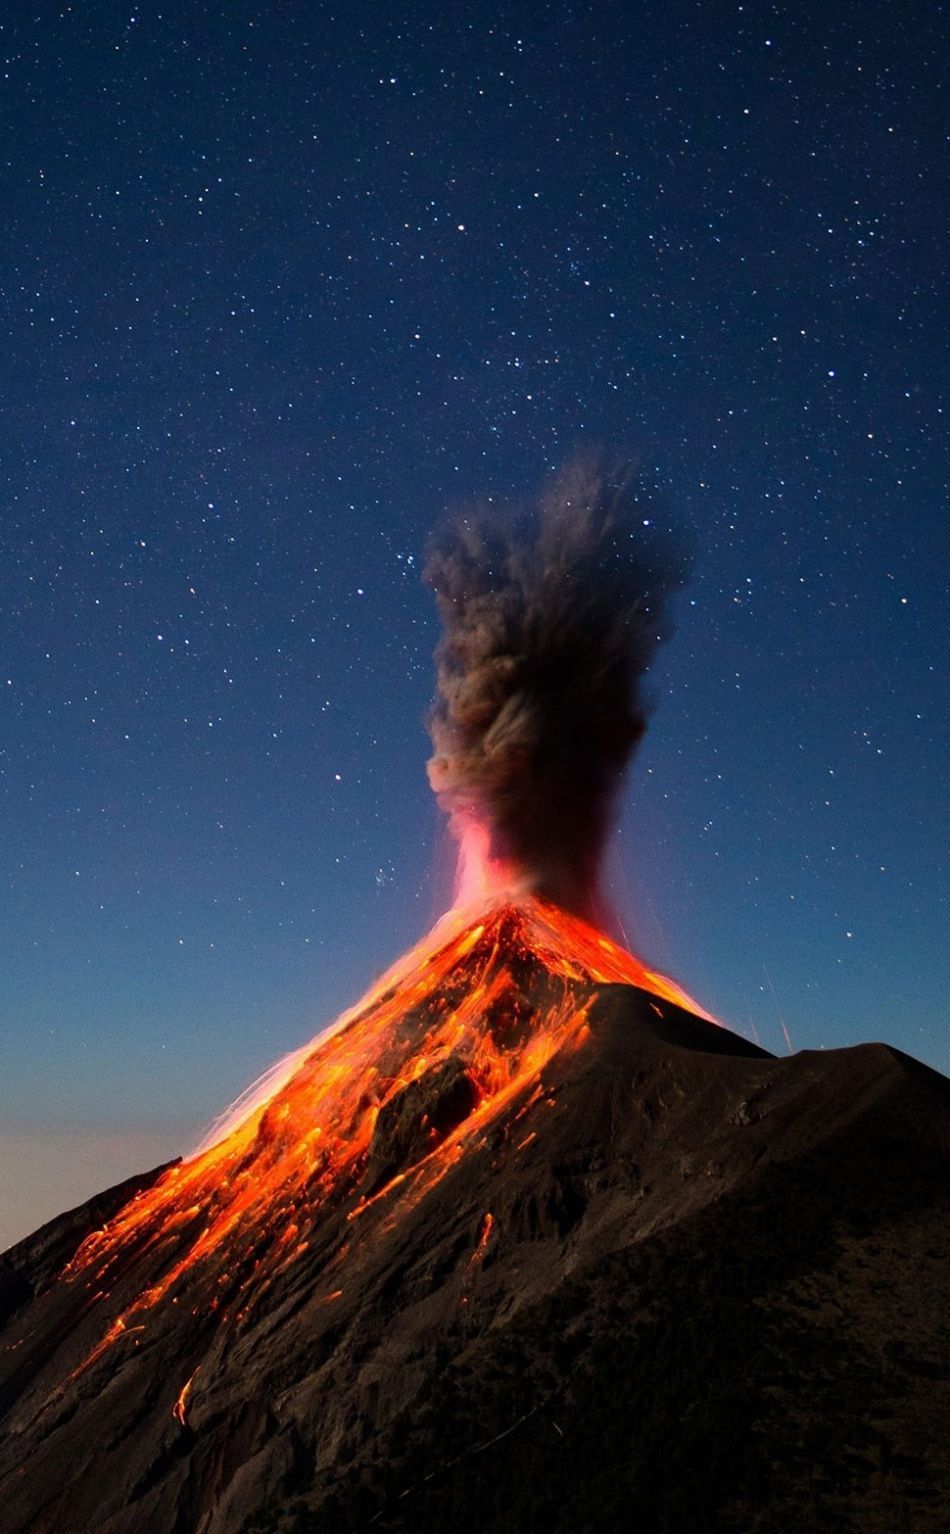 قاب جادویی بزرگترین کوه های آتشفشان فعال جهان برای زمینه